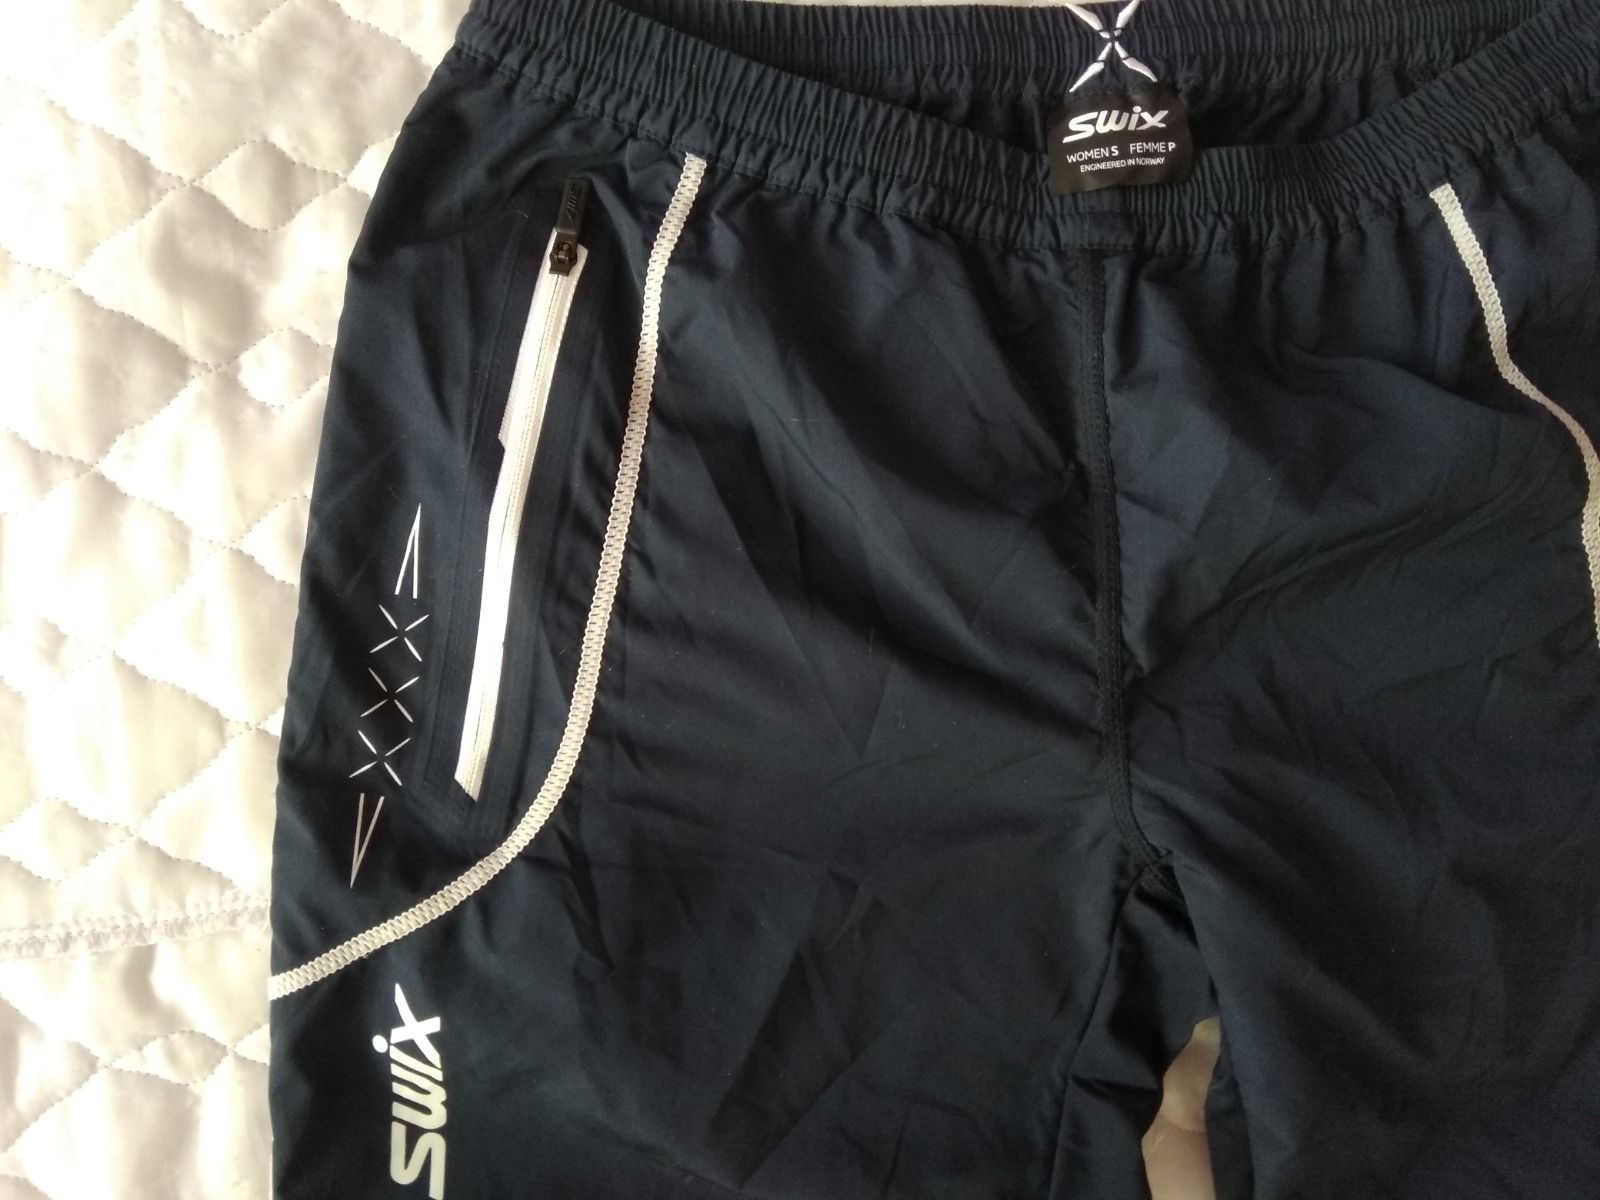 Фирменные женские штаны SWIX (лыжи, бег). Размер 42-46